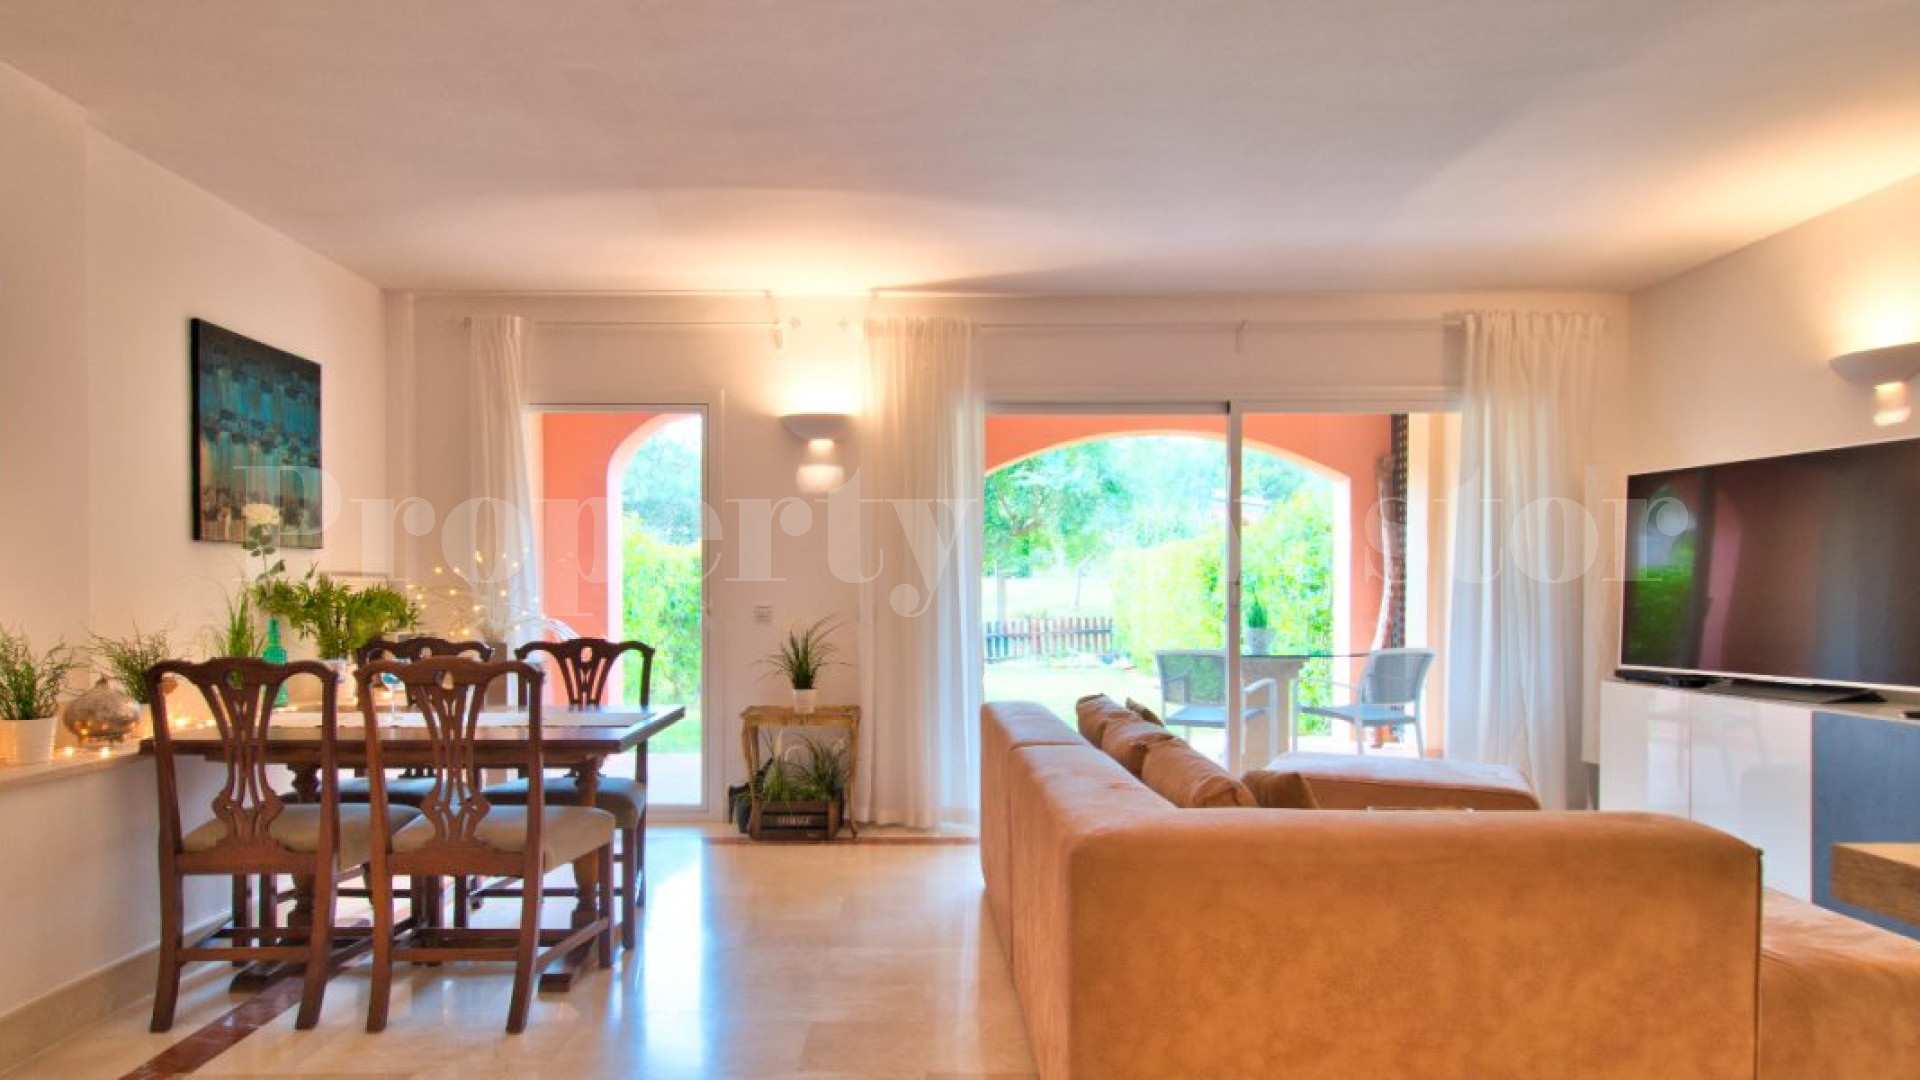 2 Bedroom Garden Apartment in Residence “Ses Penyes Rotges” in Nova Santa Ponsa